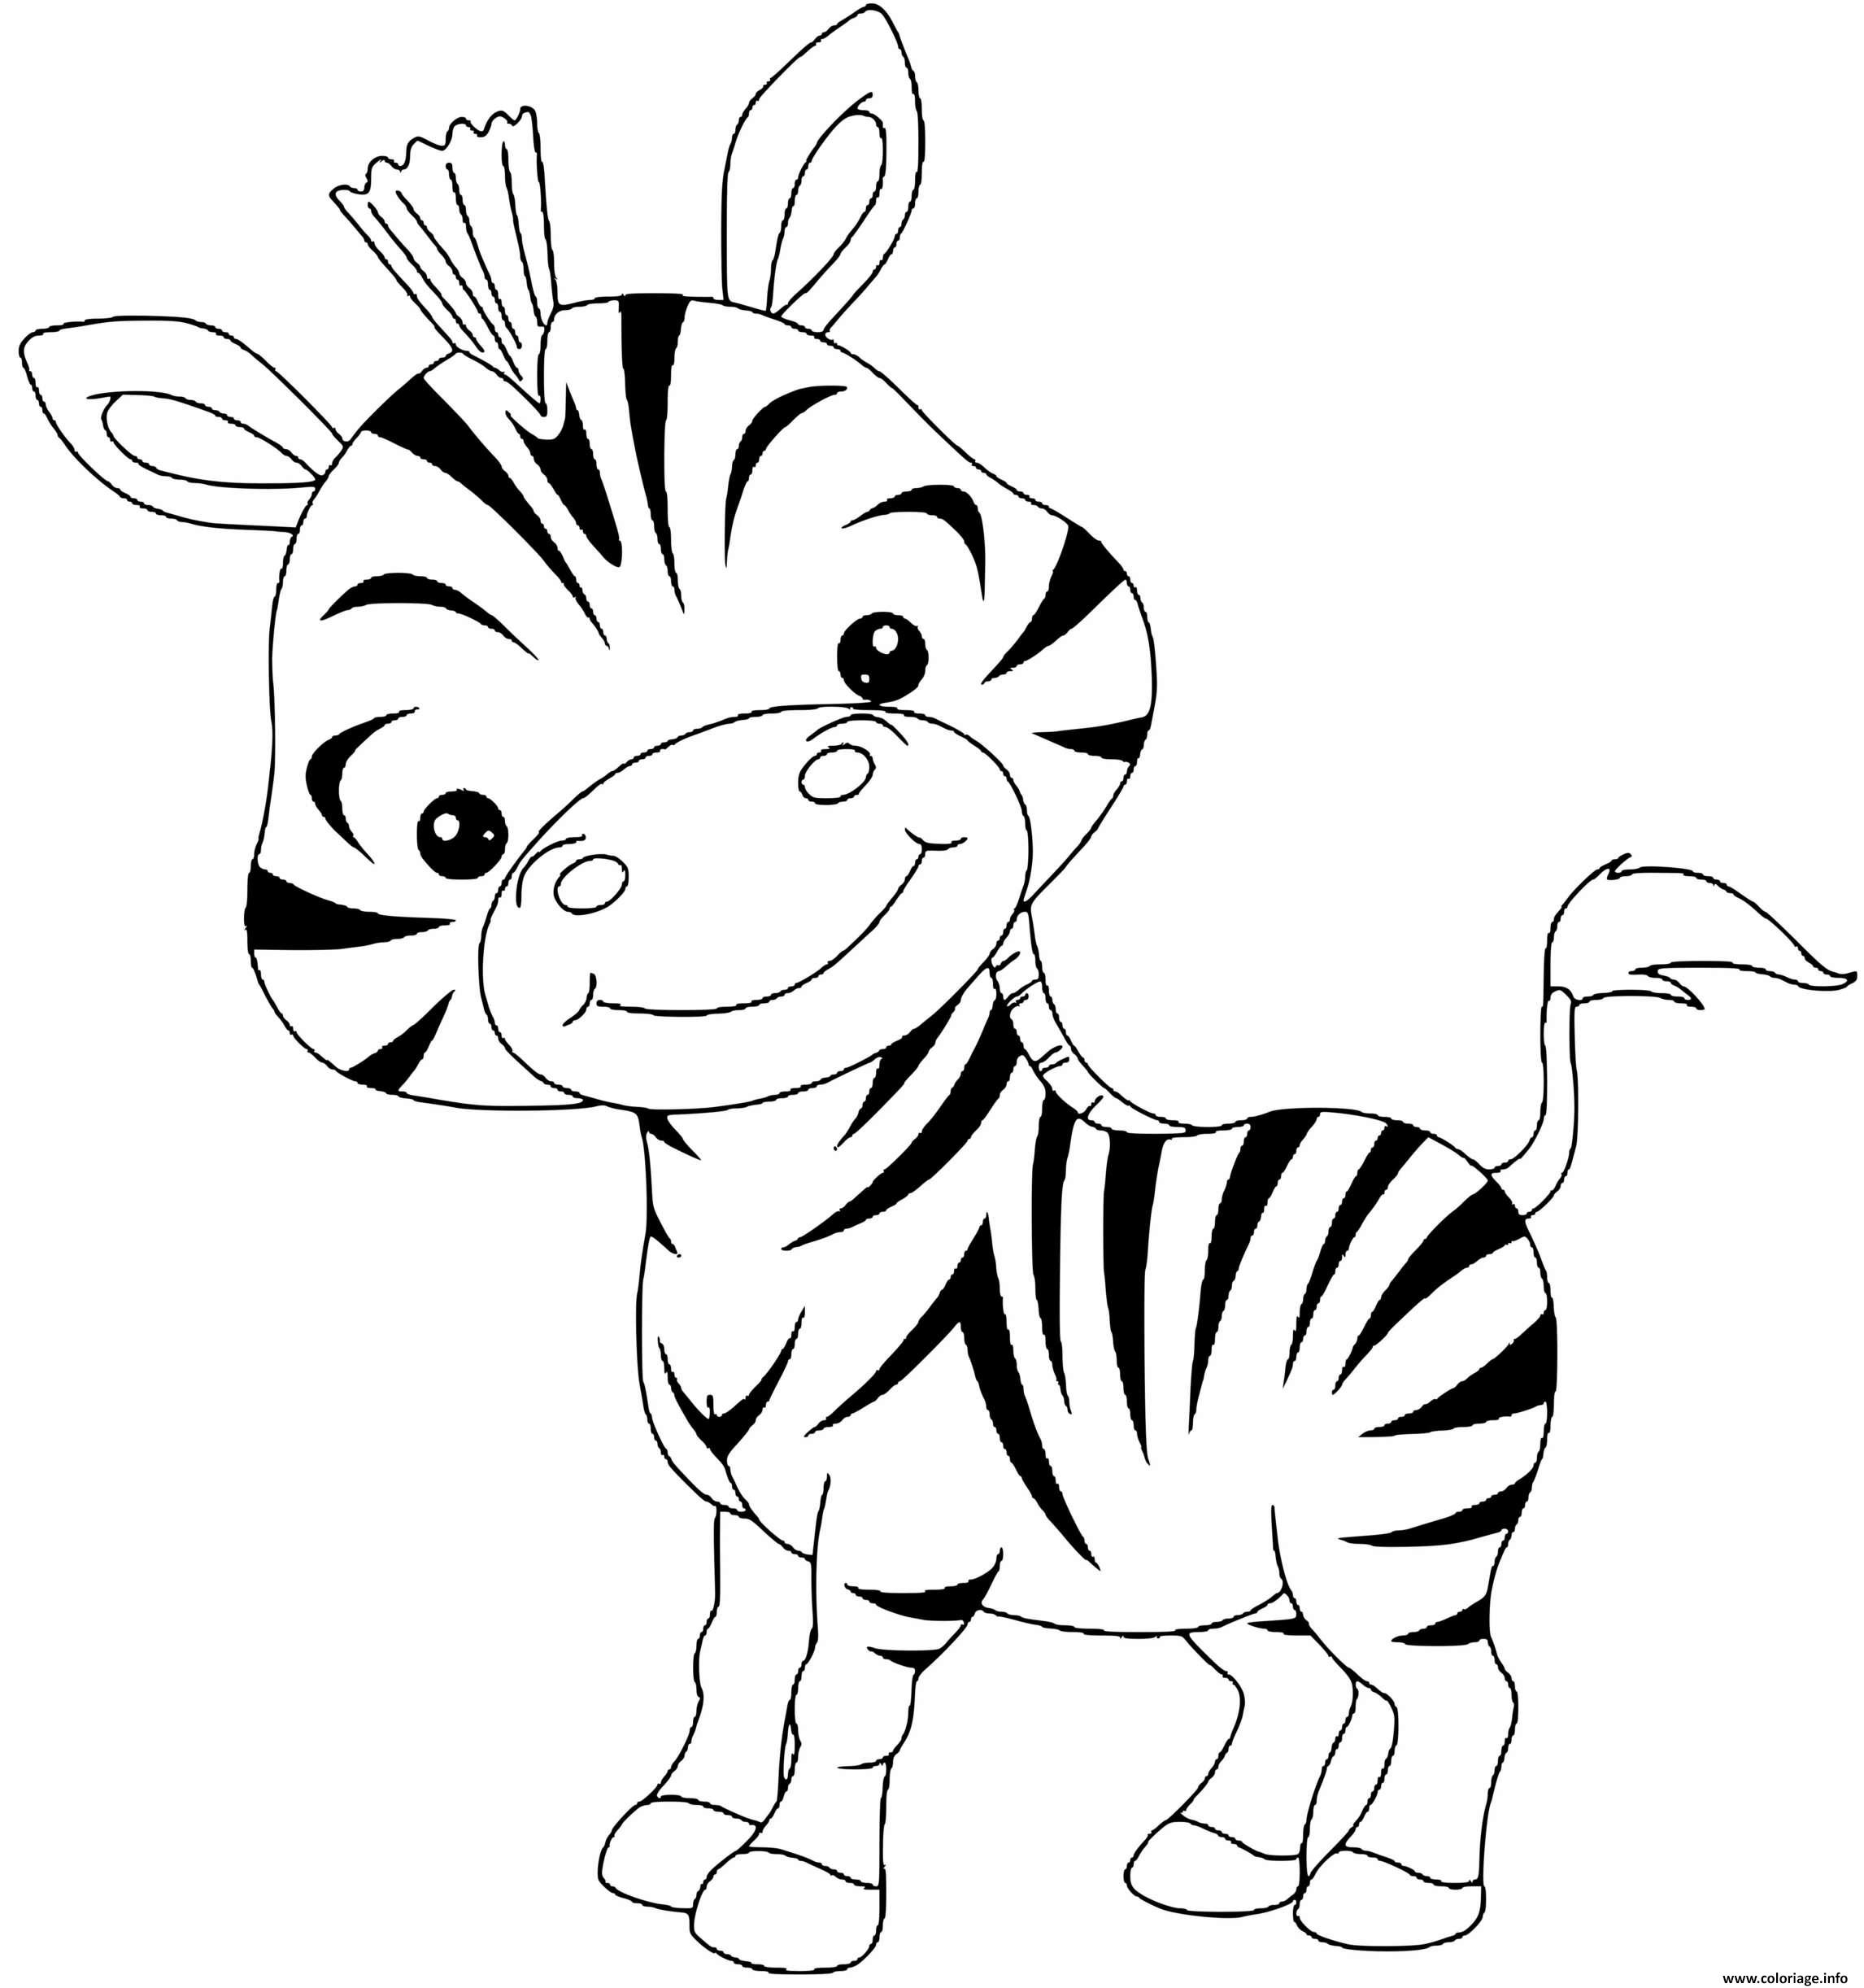 Dessin bebe zebre animaux Coloriage Gratuit à Imprimer